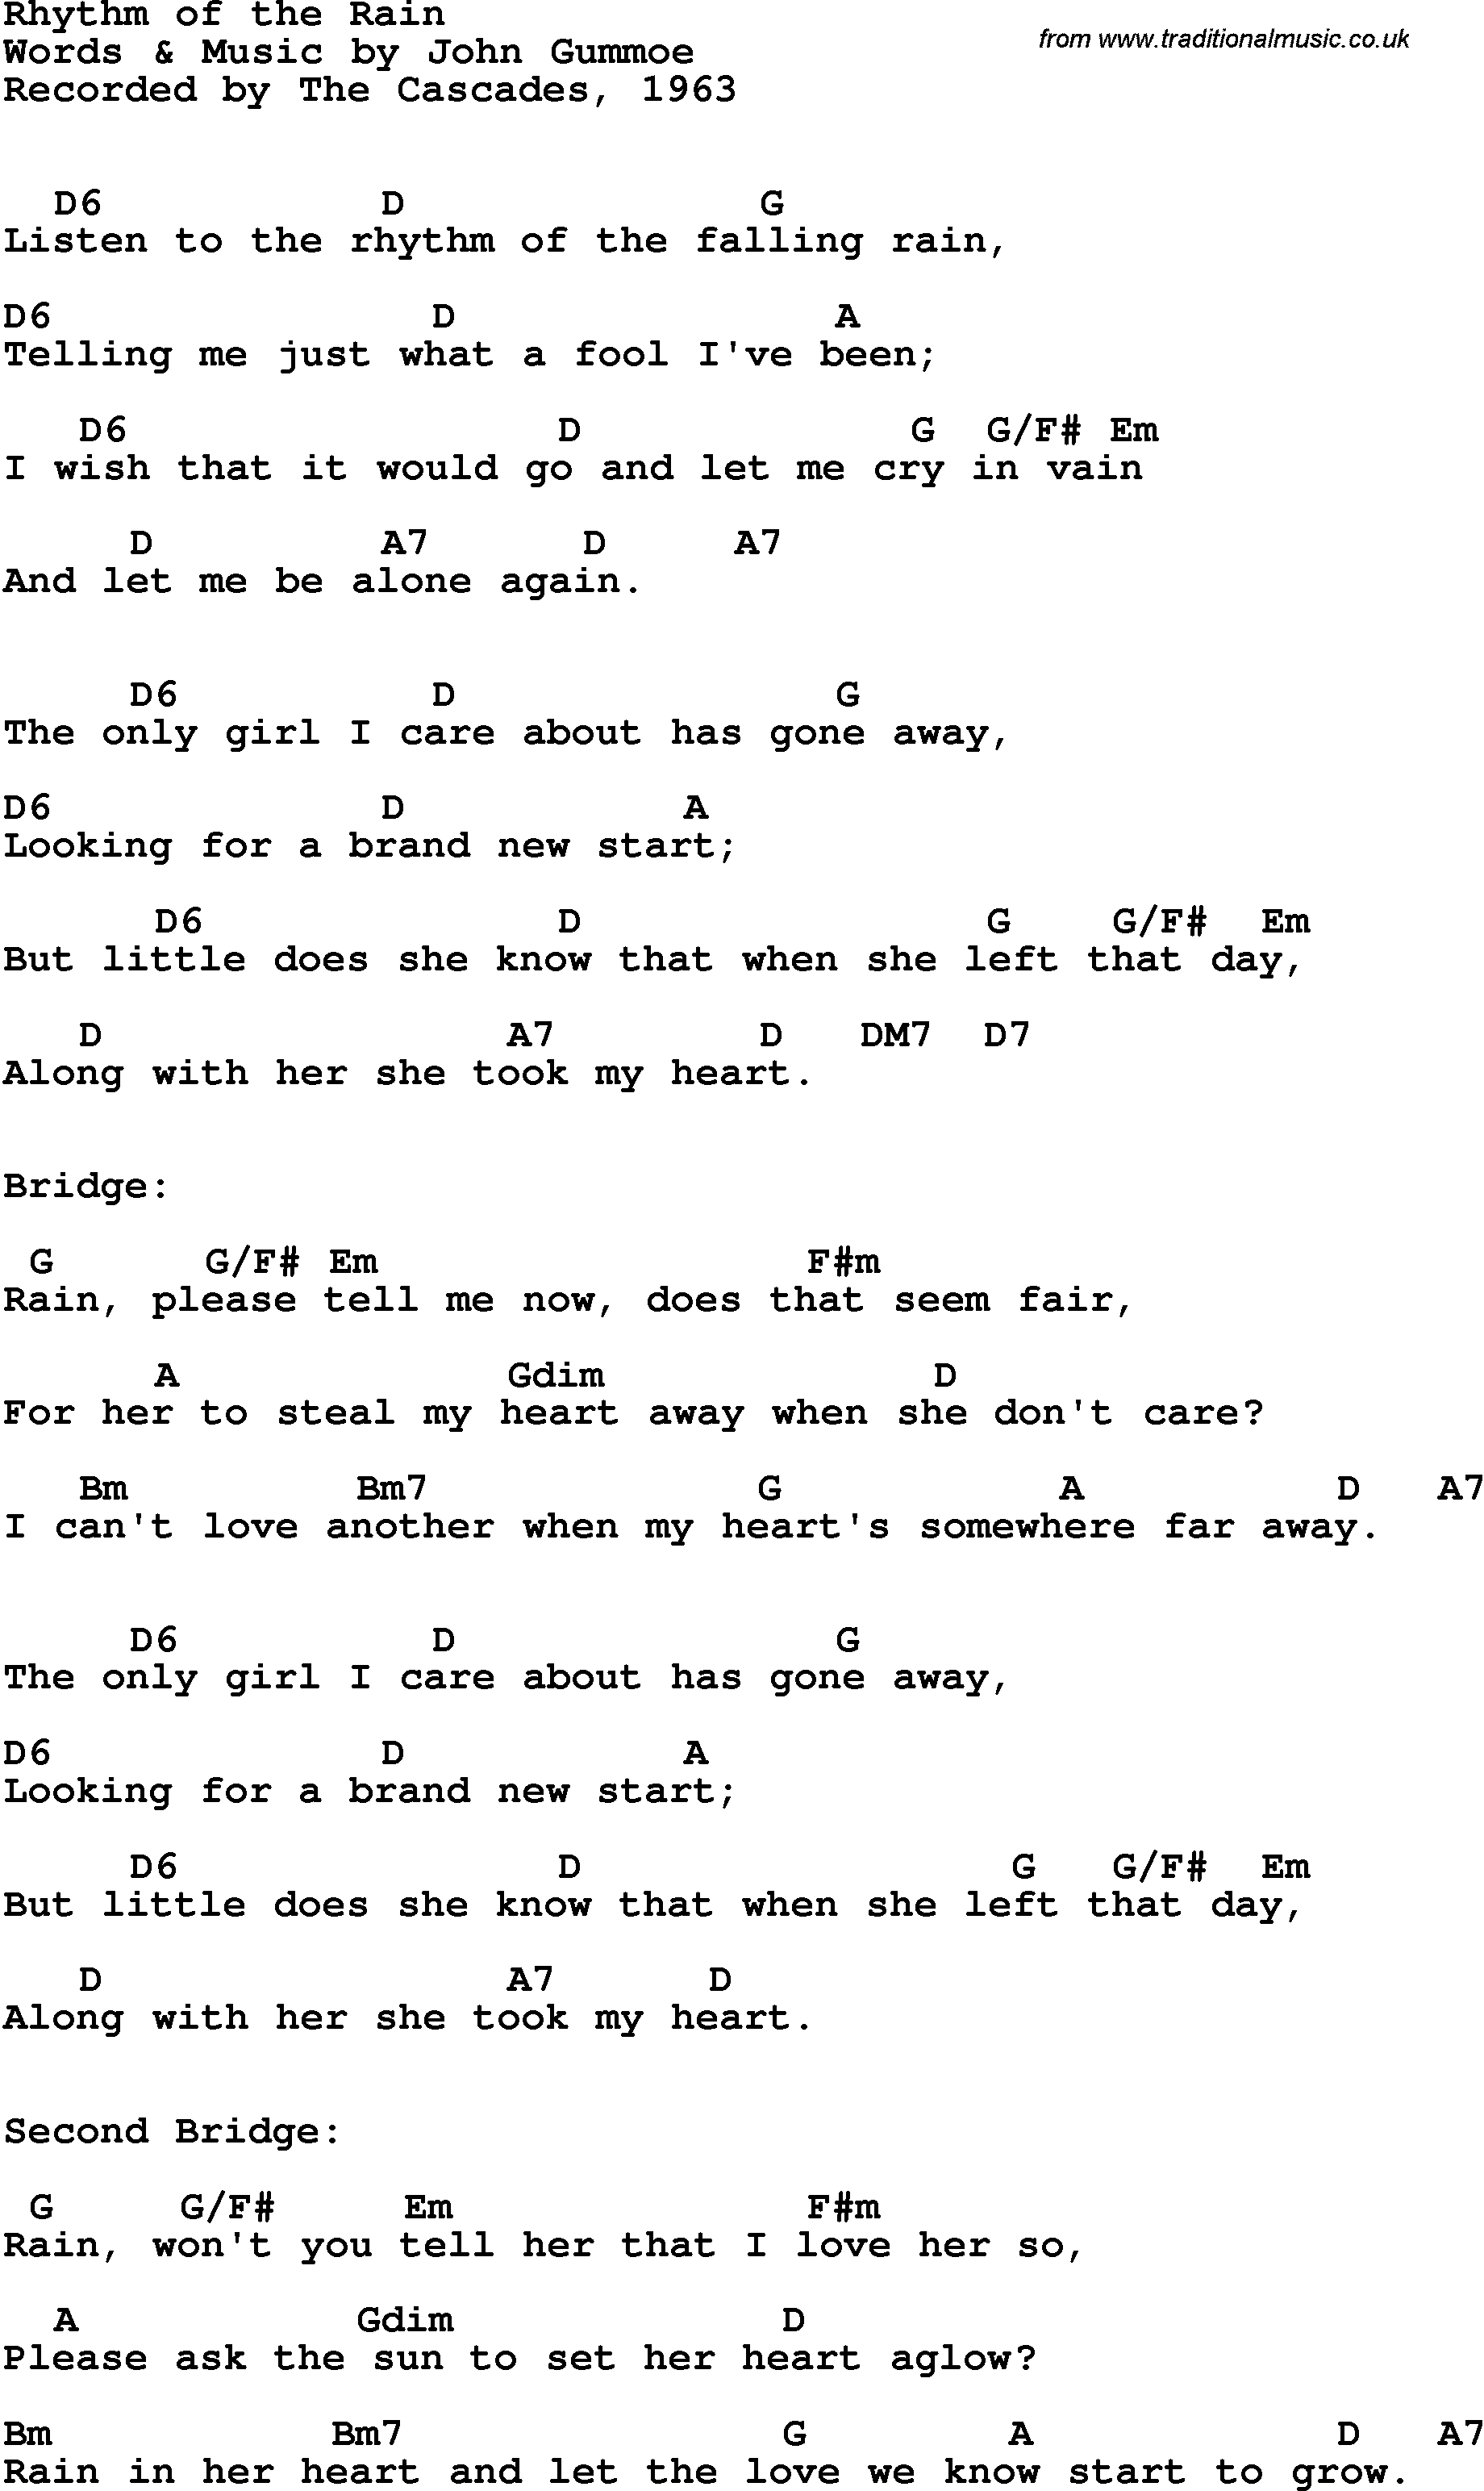 Song Lyrics with guitar chords for Rhythm Of The Rain - The Cascades, 1963